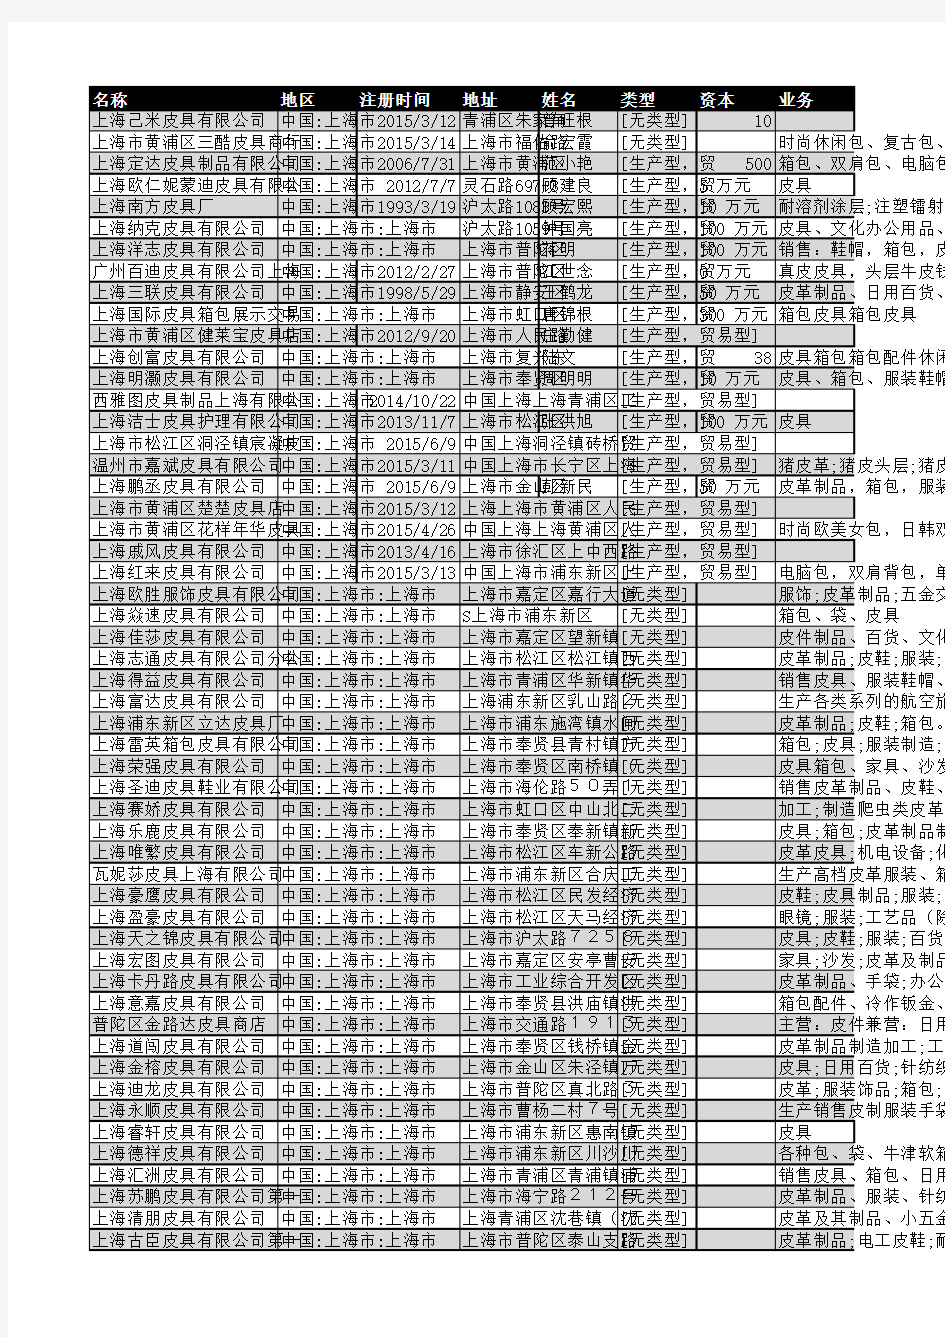 2018年上海市皮具行业企业名录1359家